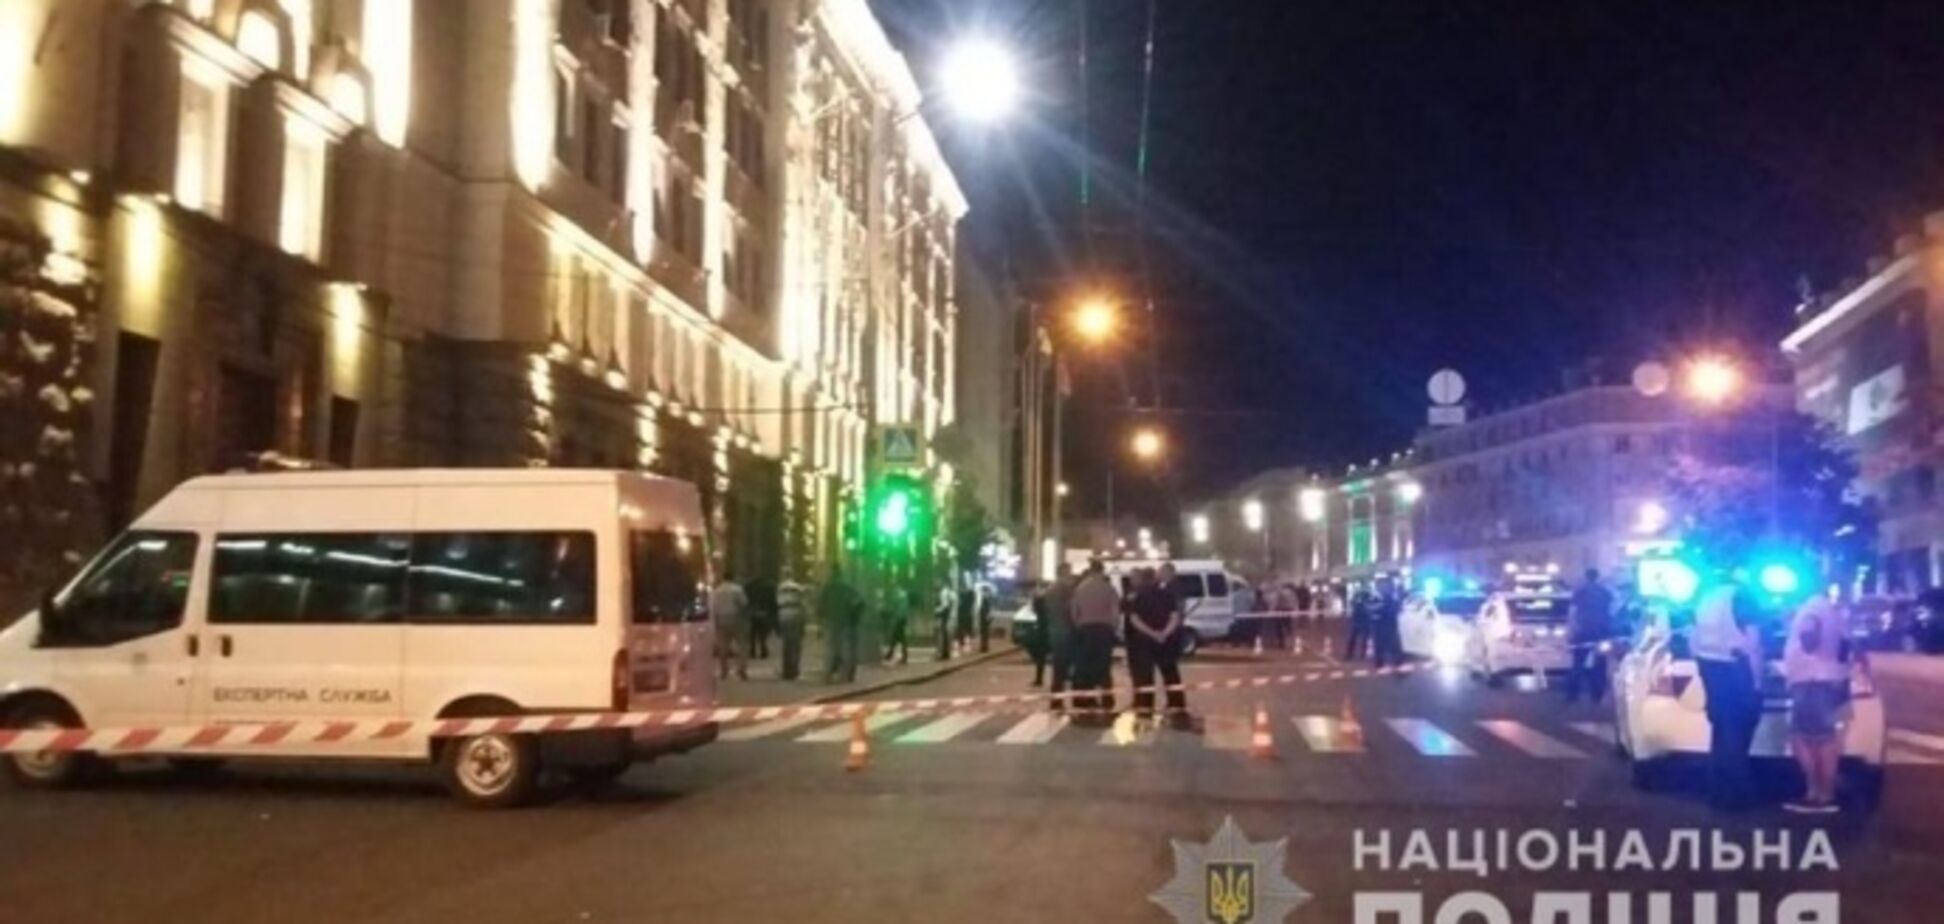 Момент ликвидации стрелка в Харькове попал на видео 